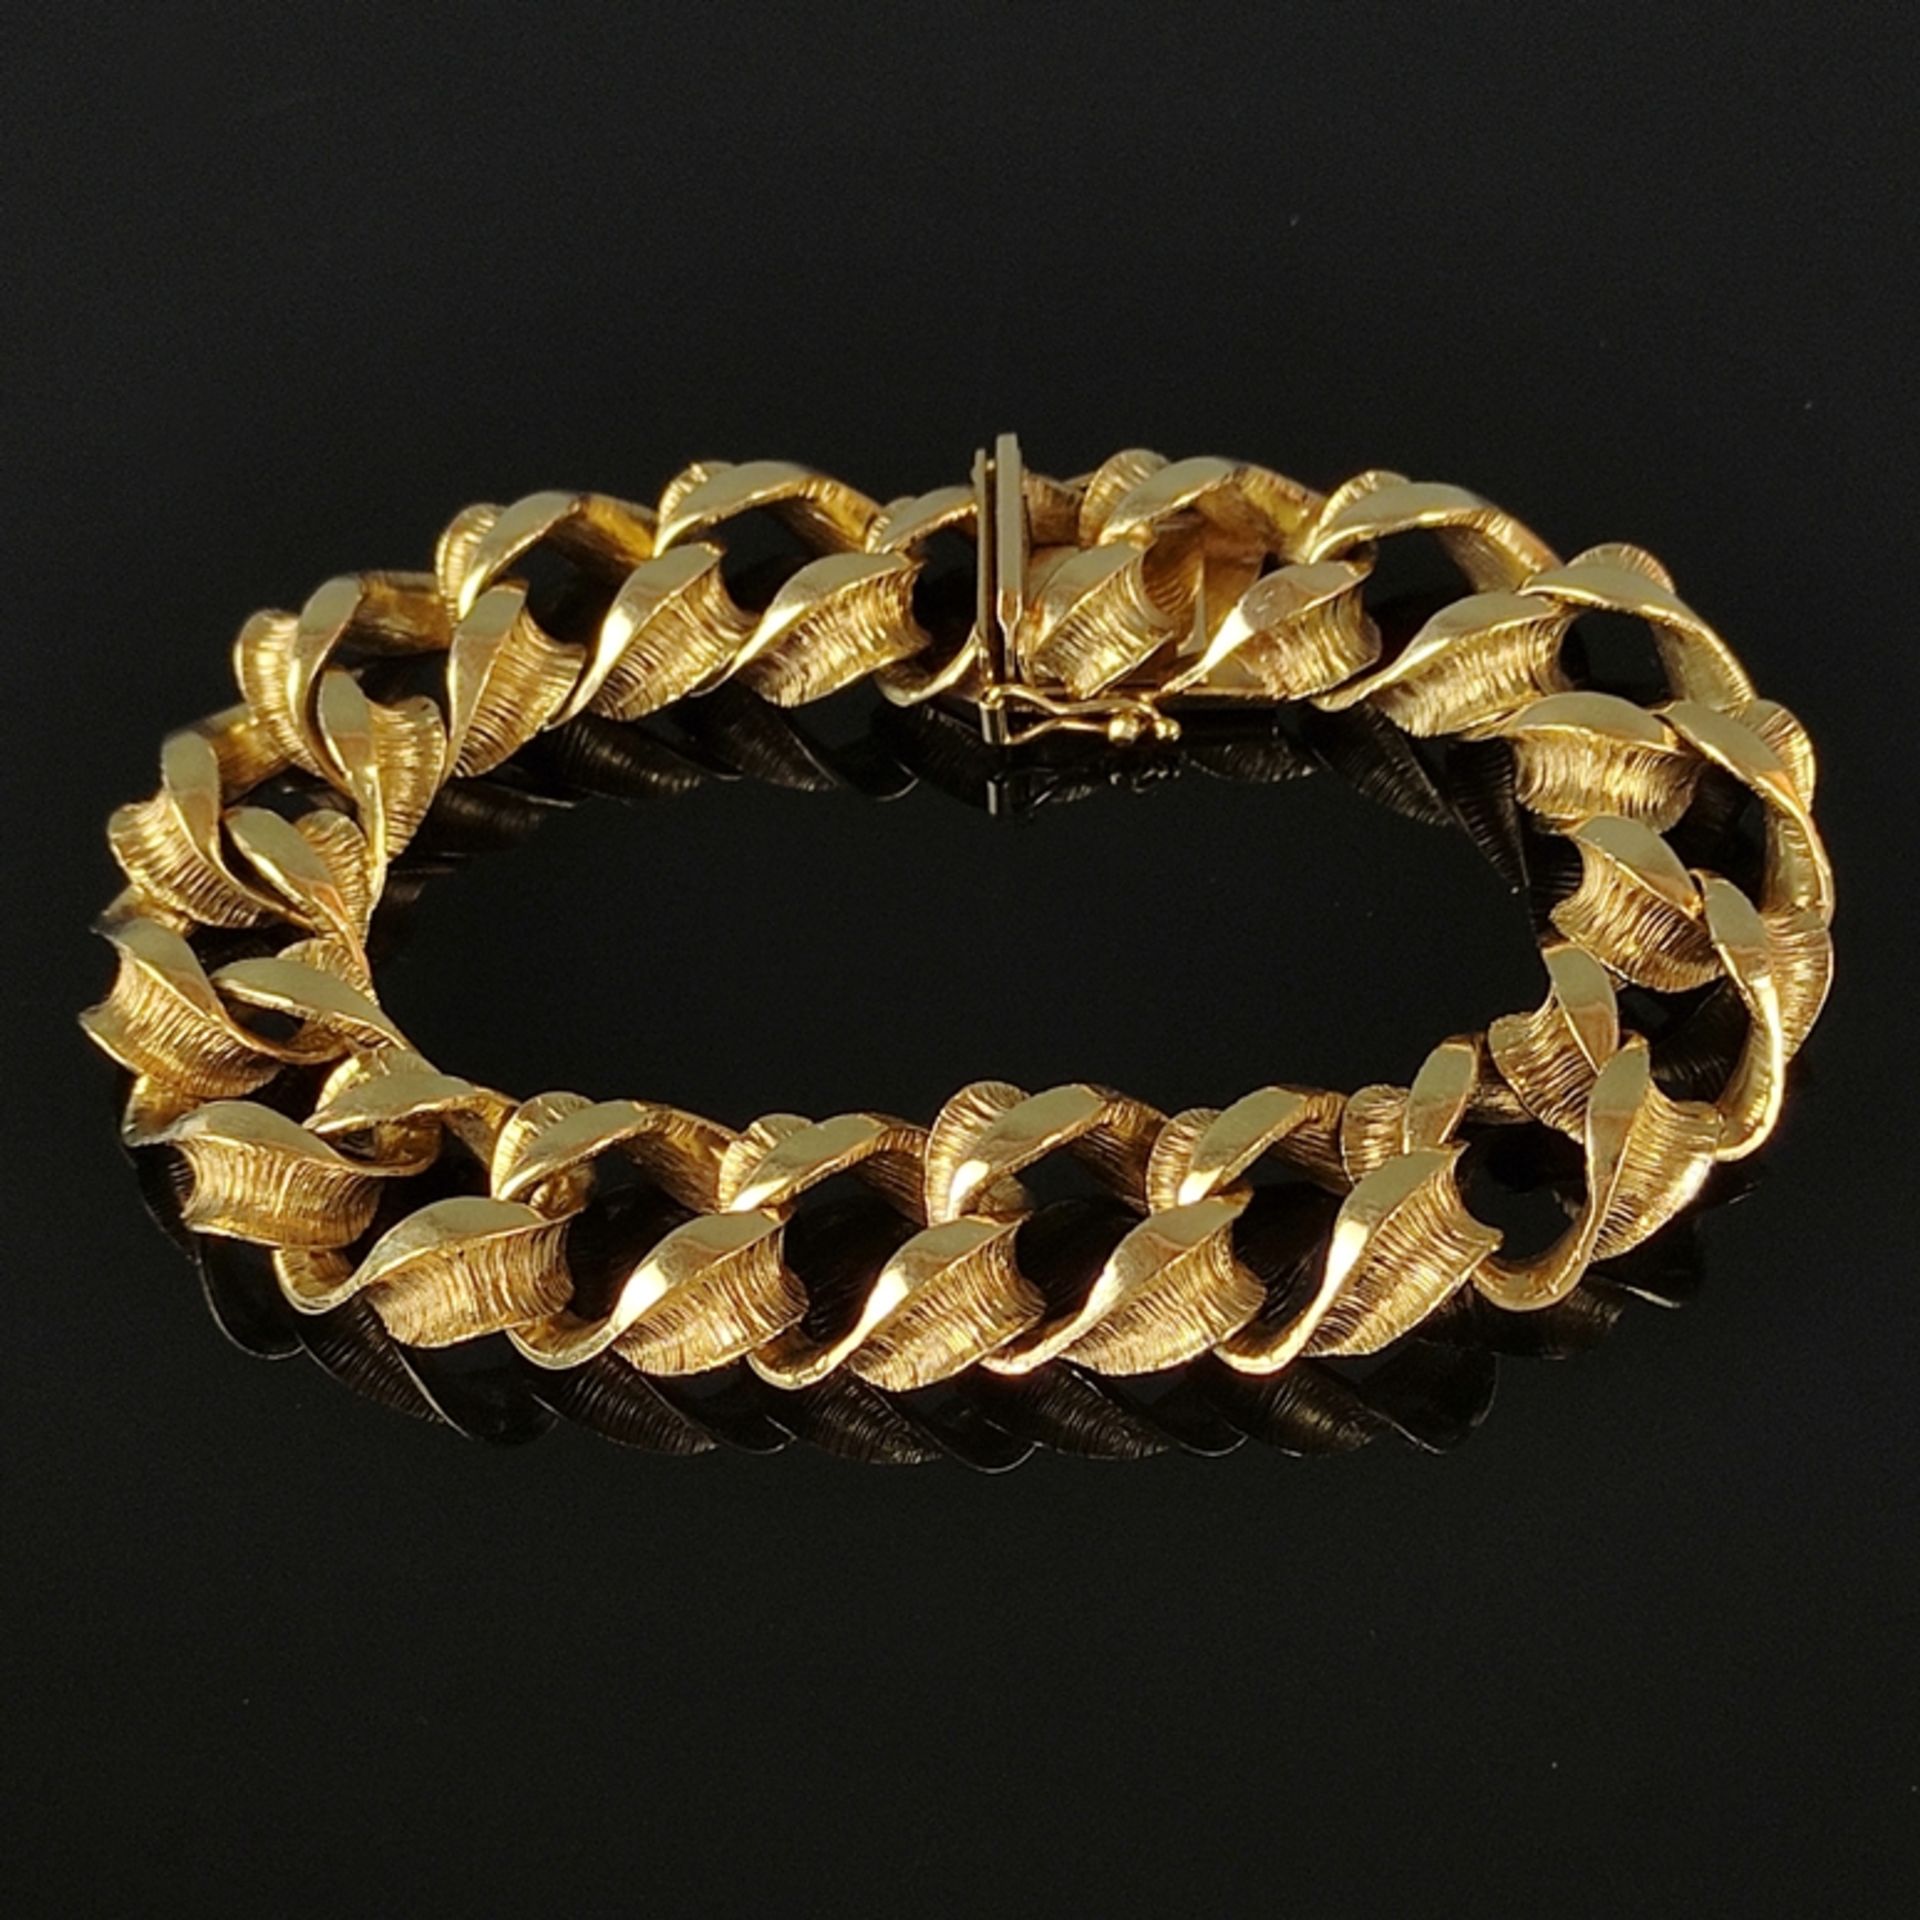 Armband, 585/14K Gelbgold (punziert), 43,8g, gearbeitet aus gedrehten und strukturiert gestalteten 